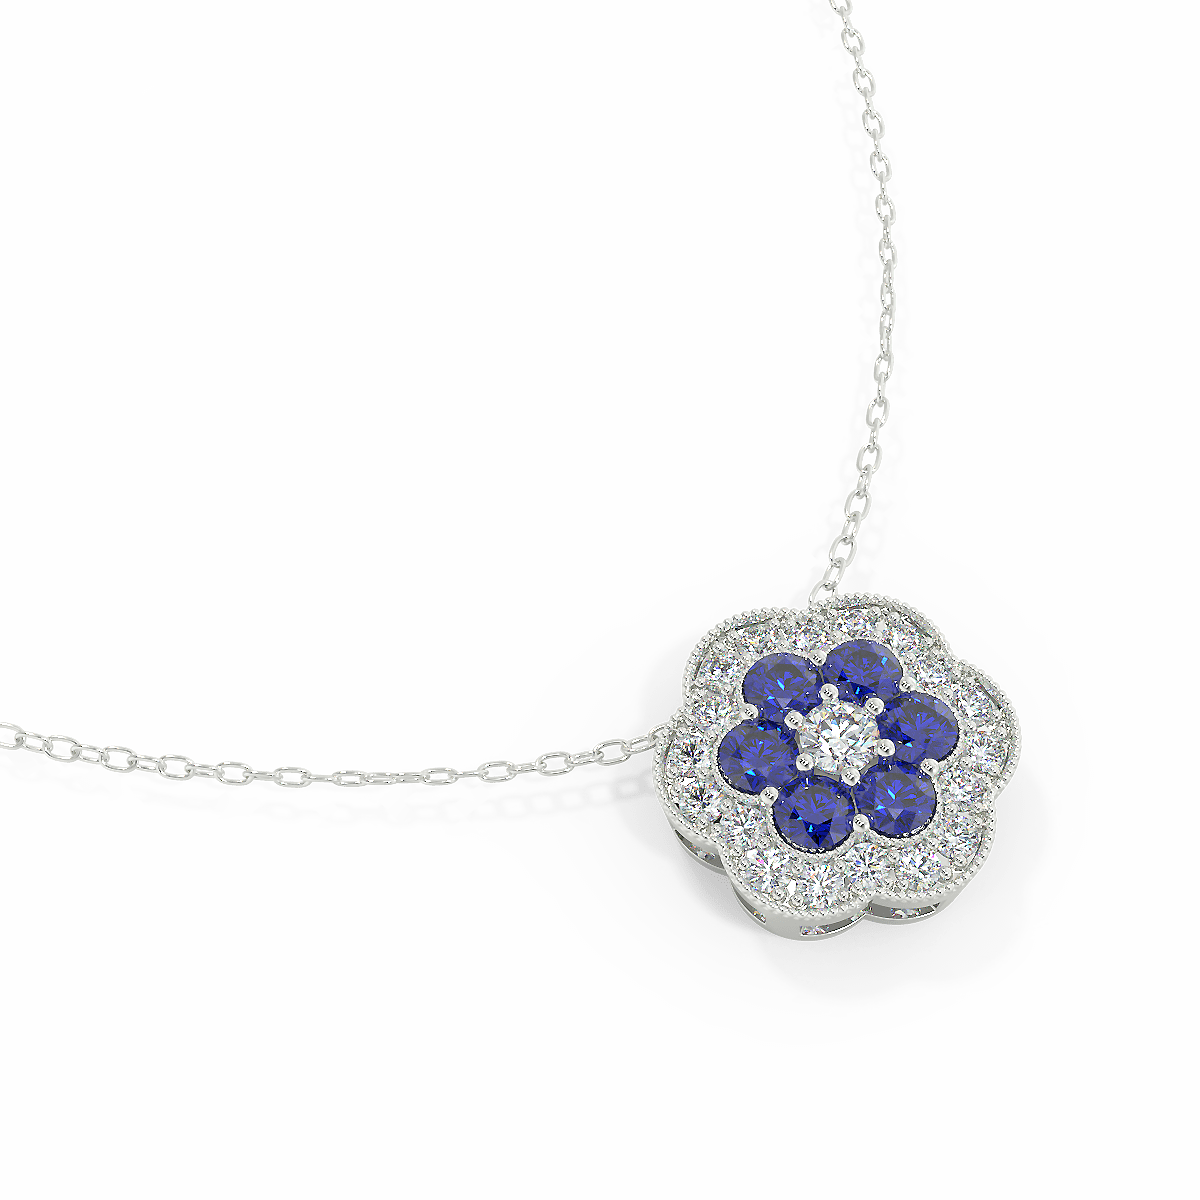 ELEGANT FLORAL ACCENT DIAMOND & BLUE SAPPHIRE NECKLACE